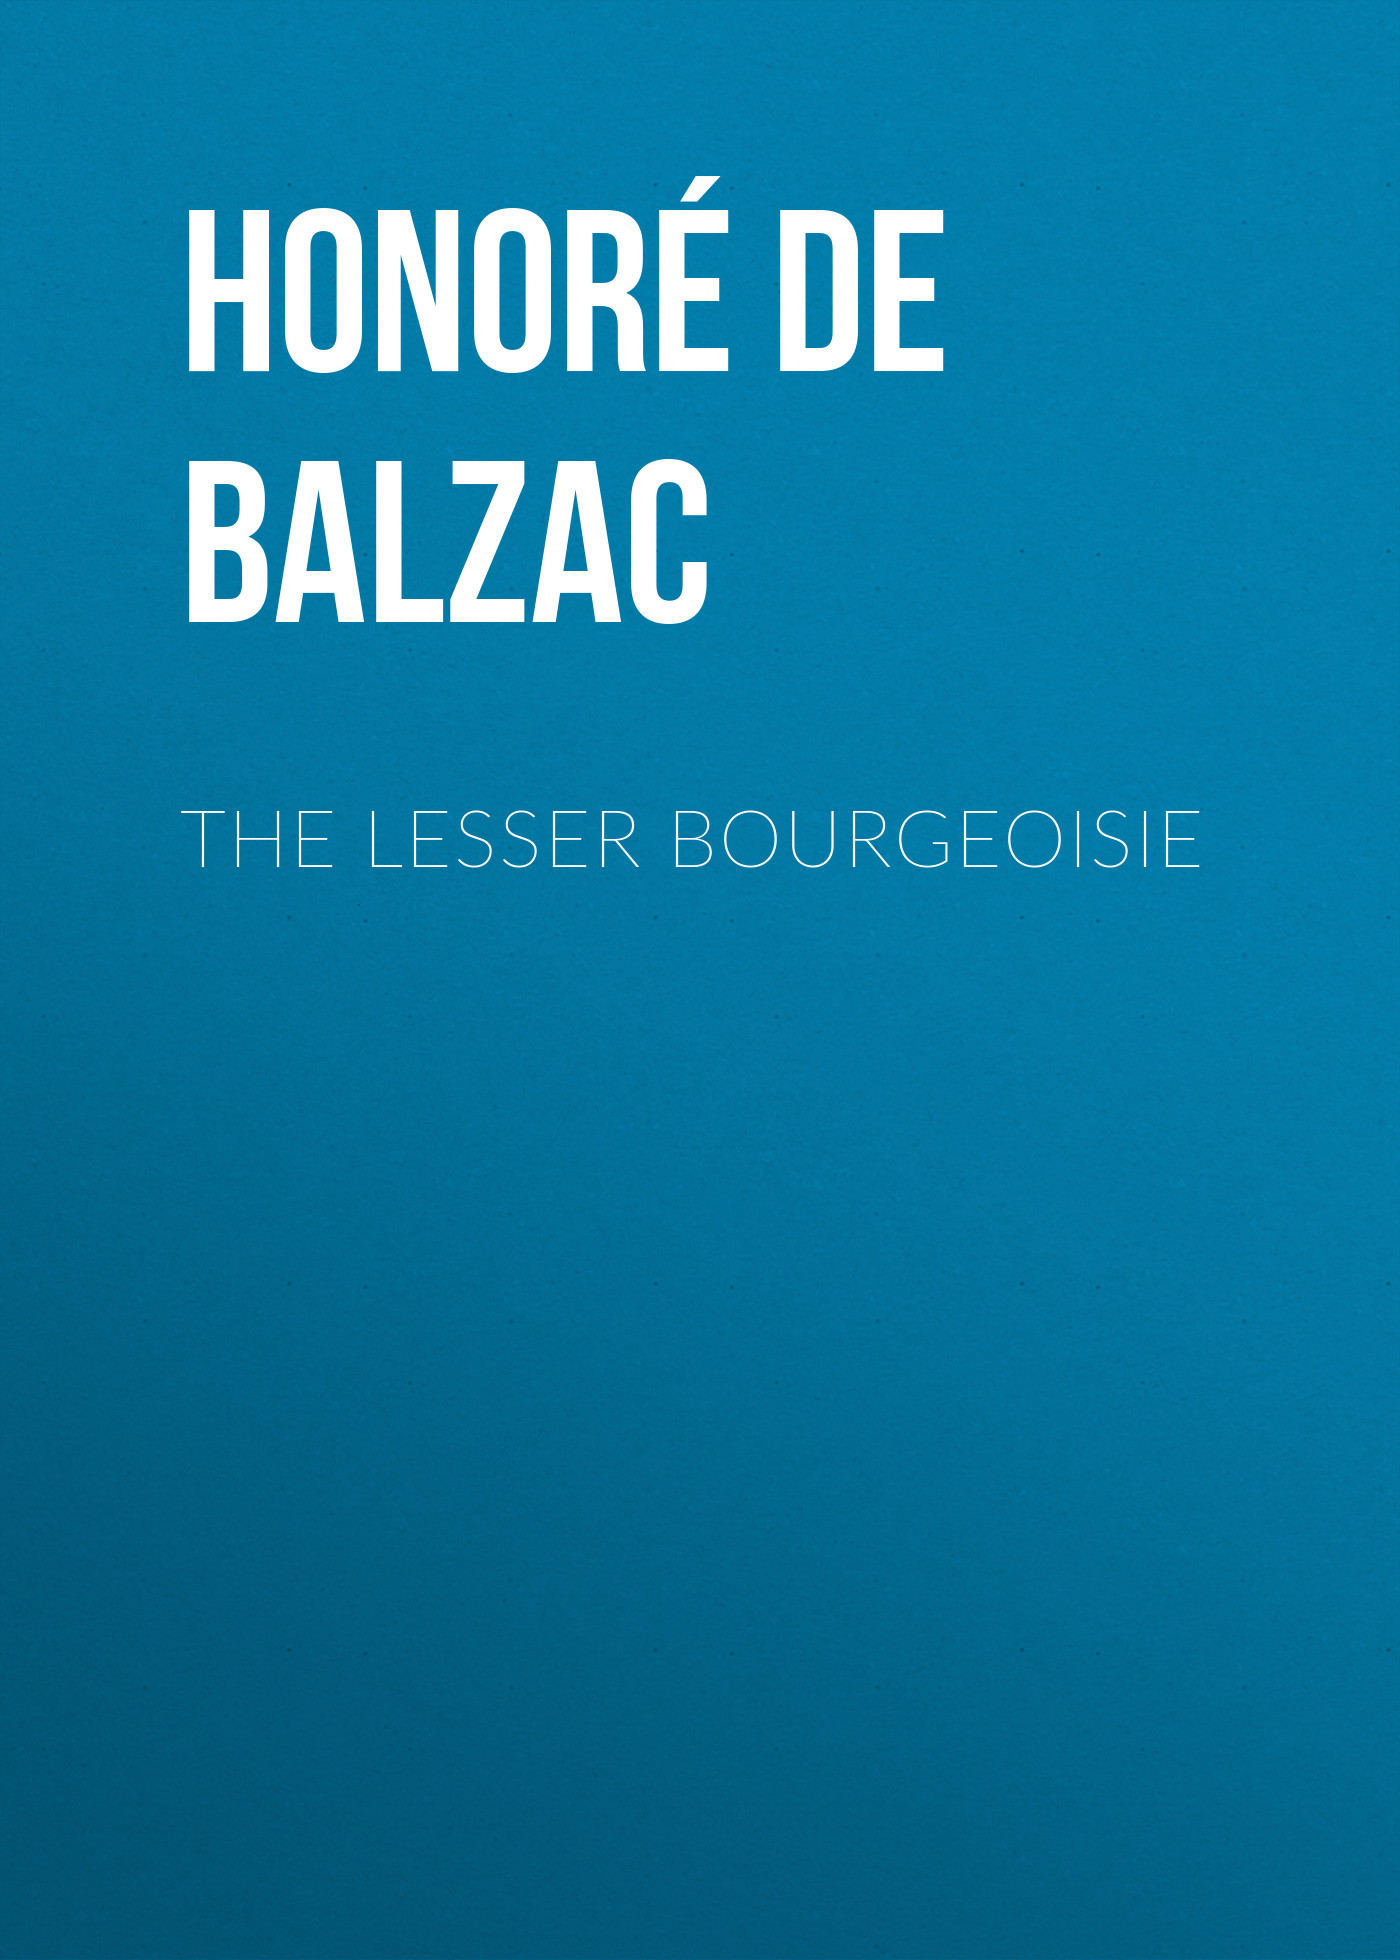 Книга The Lesser Bourgeoisie из серии , созданная Honoré Balzac, может относится к жанру Литература 19 века, Зарубежная старинная литература, Зарубежная классика. Стоимость электронной книги The Lesser Bourgeoisie с идентификатором 25020419 составляет 0 руб.